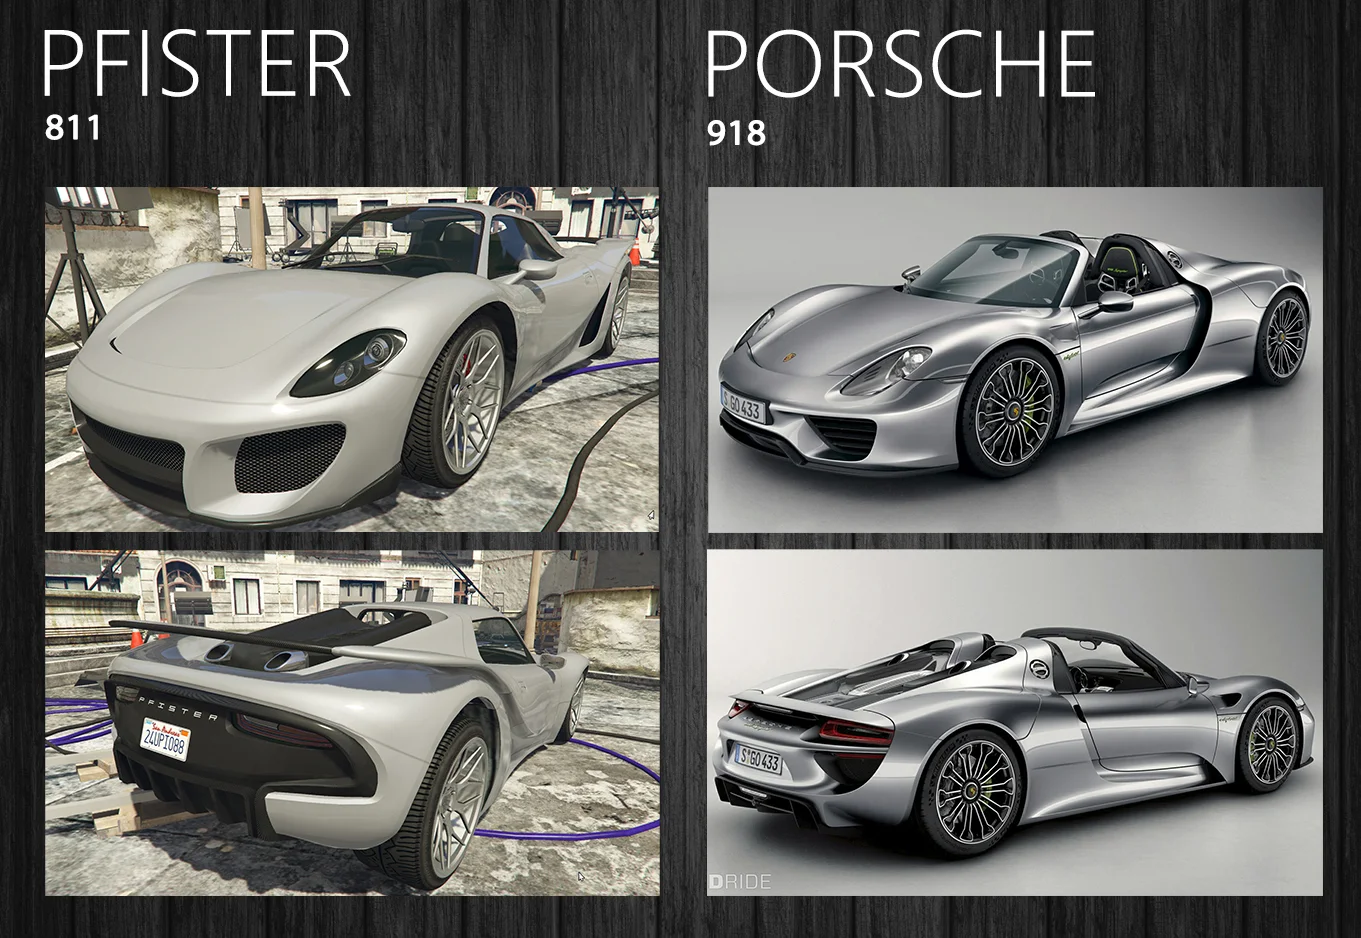 Своего упоминания в GTA заслуживают и машины Porsche. Например, гибридный суперкар 918 Spyder…